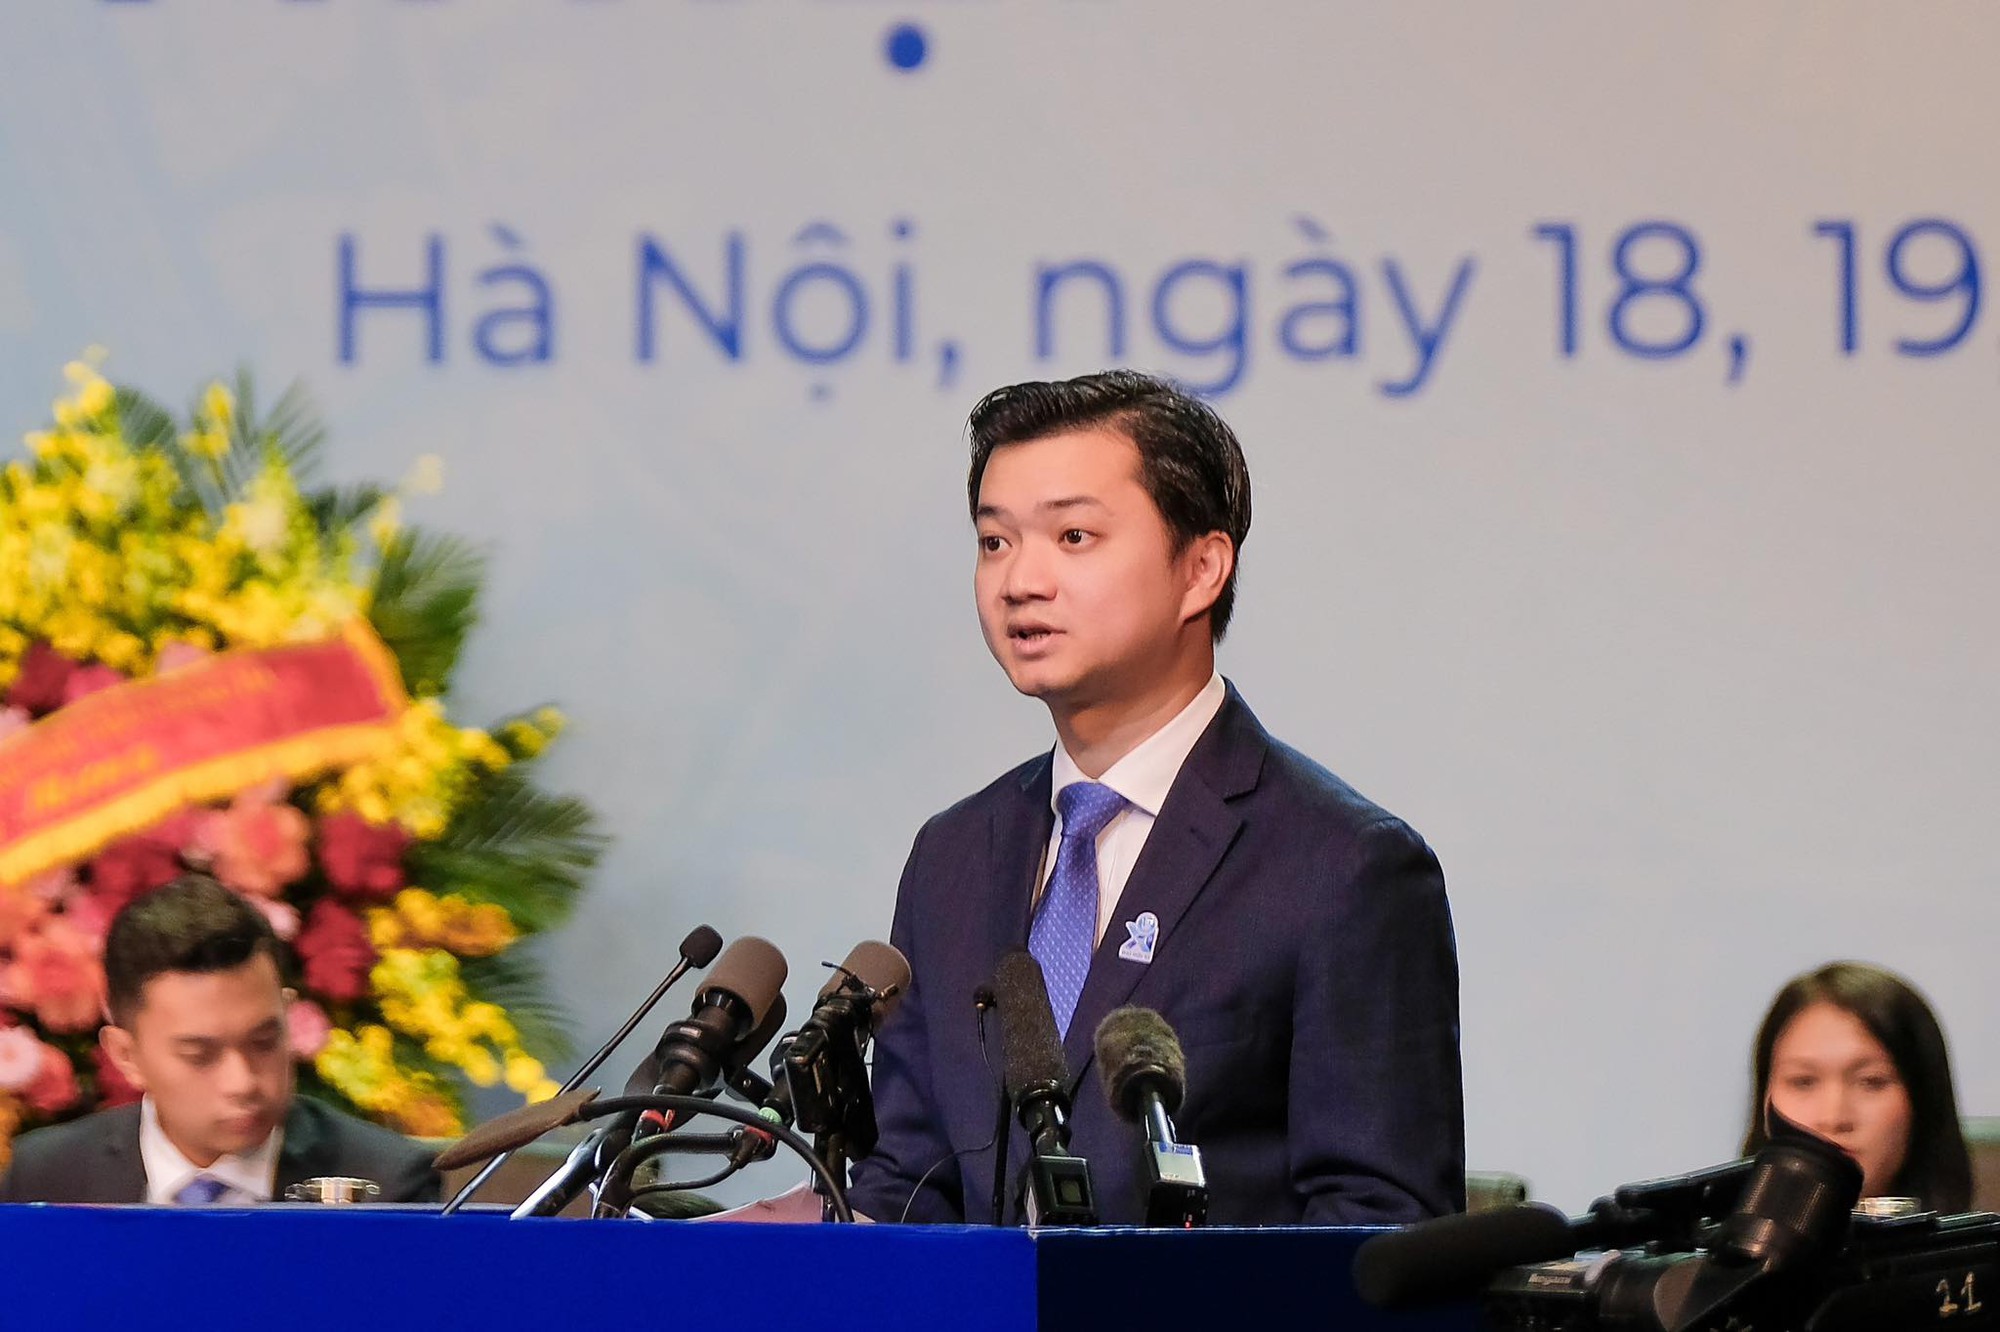 Ra mắt Ban chấp hành Trung ương Hội Sinh viên Việt Nam khoá XI: Chủ tịch mới là ai? - Ảnh 1.